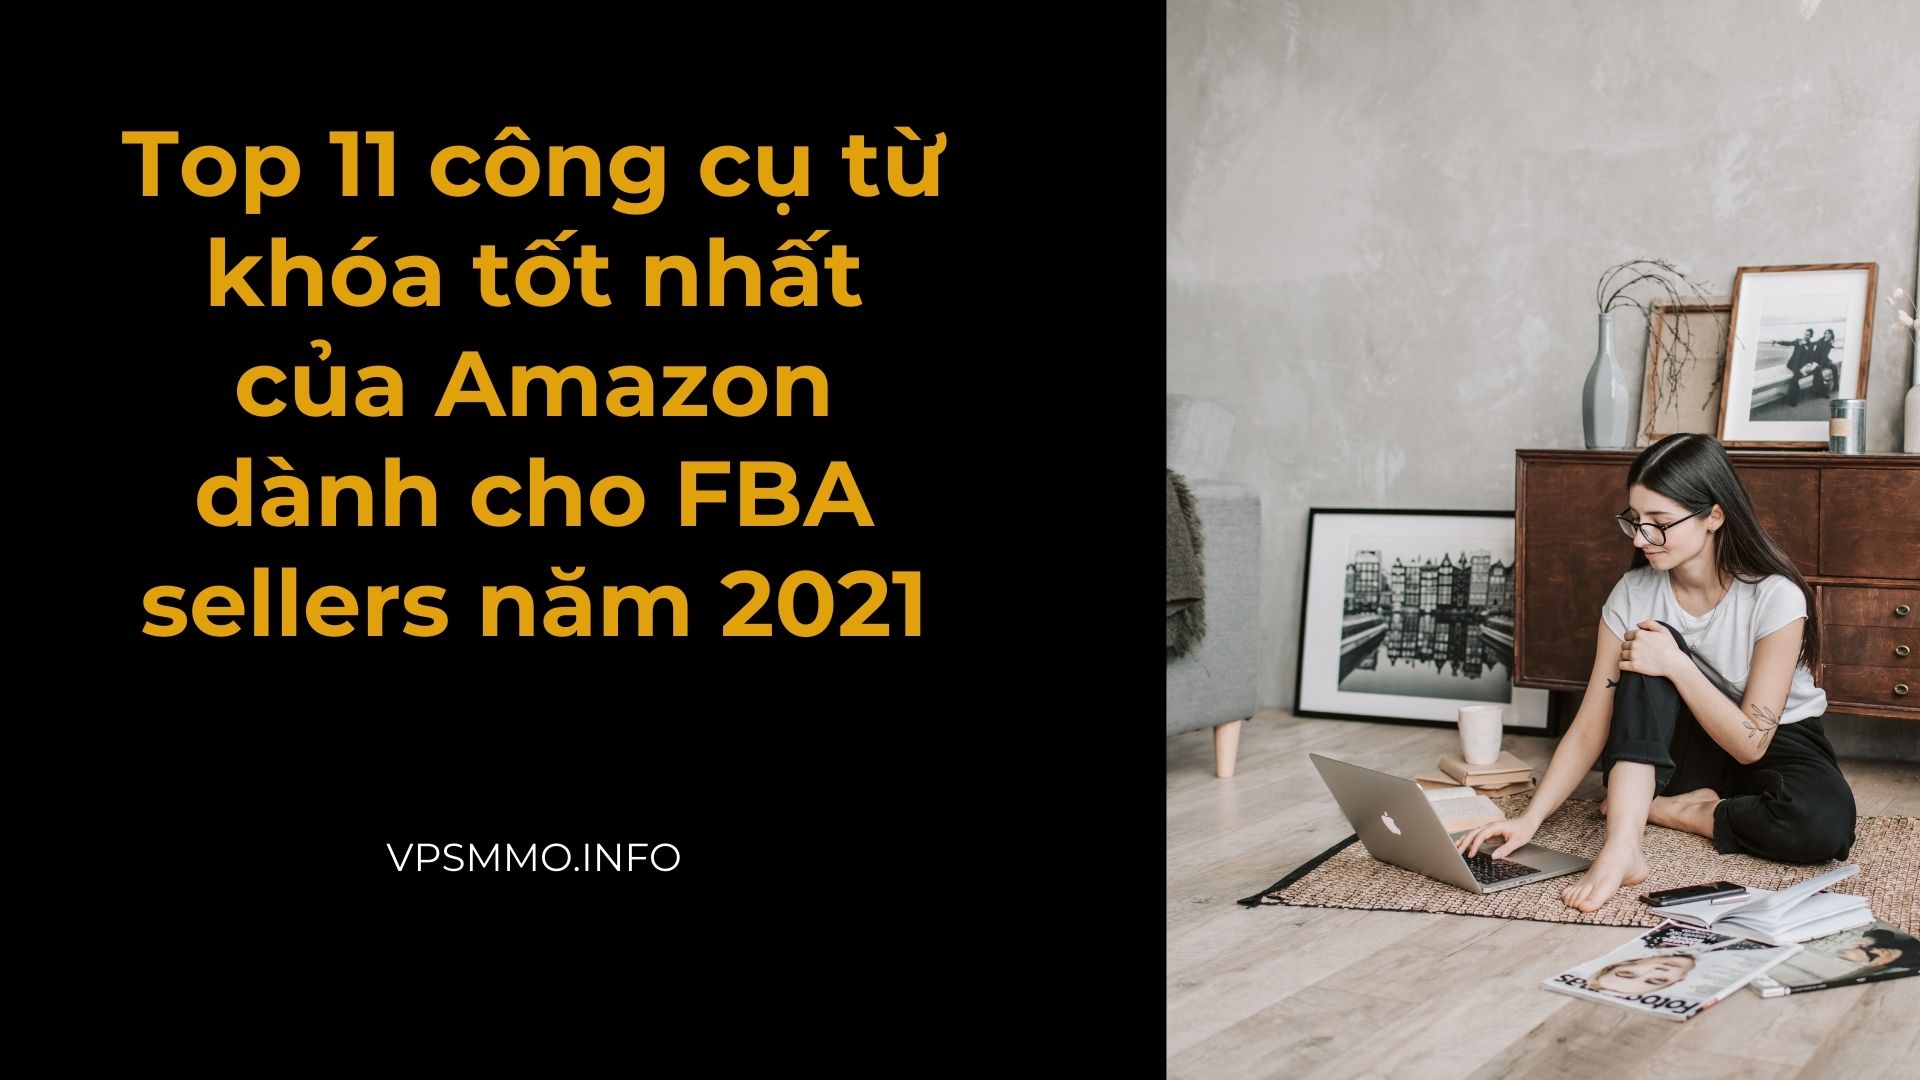 Top 11 công cụ từ khóa tốt nhất của Amazon dành cho FBA sellers năm 2021